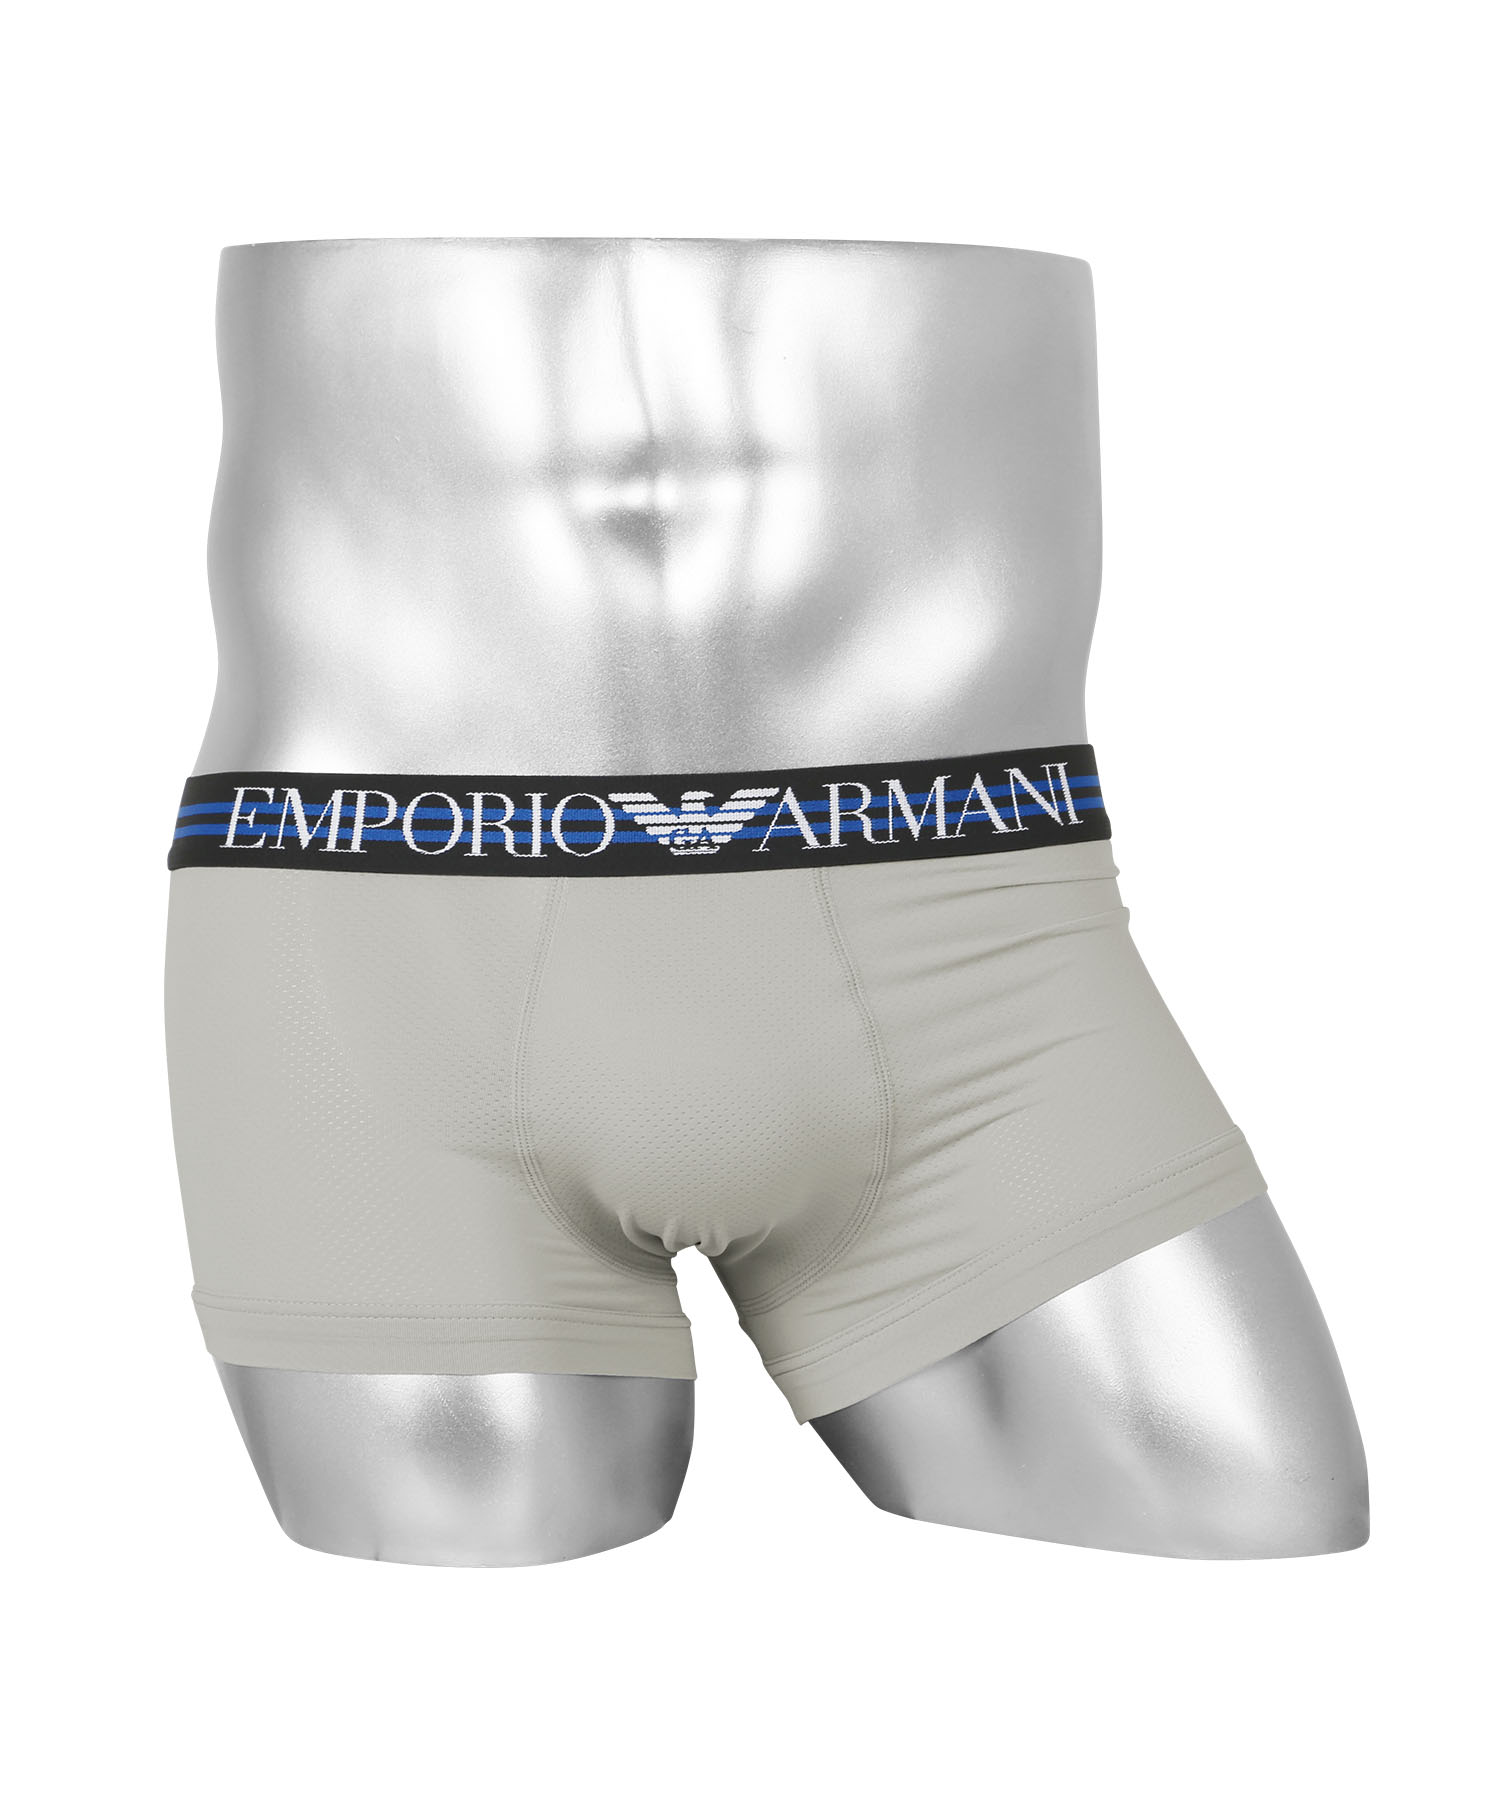 エンポリオ アルマーニ EMPORIO ARMANI ローライズボクサーパンツ メンズ アンダーウェア 男性 下着 ツルツル 速乾 高級 ハイブランド  プレゼント メール便